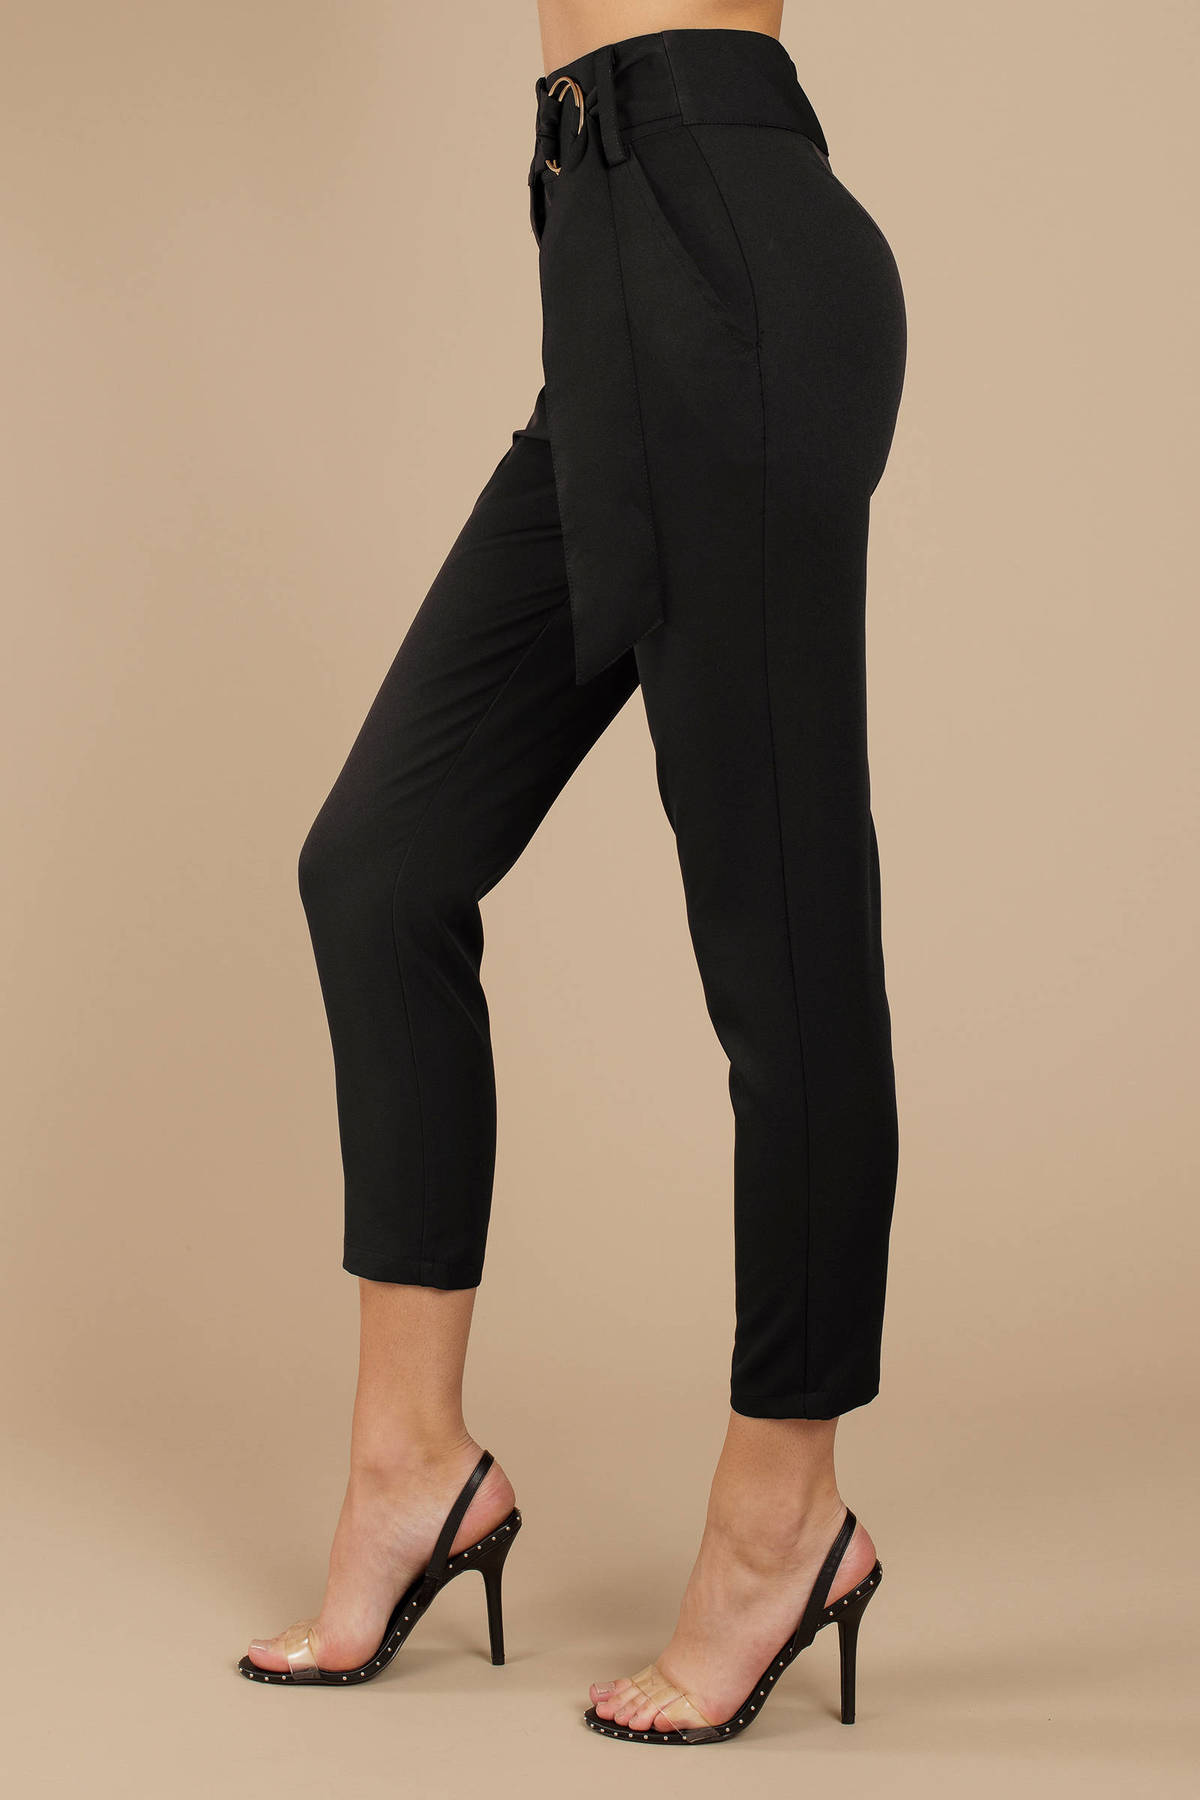 Neilene High Waisted Pants in Black - $28 | Tobi US